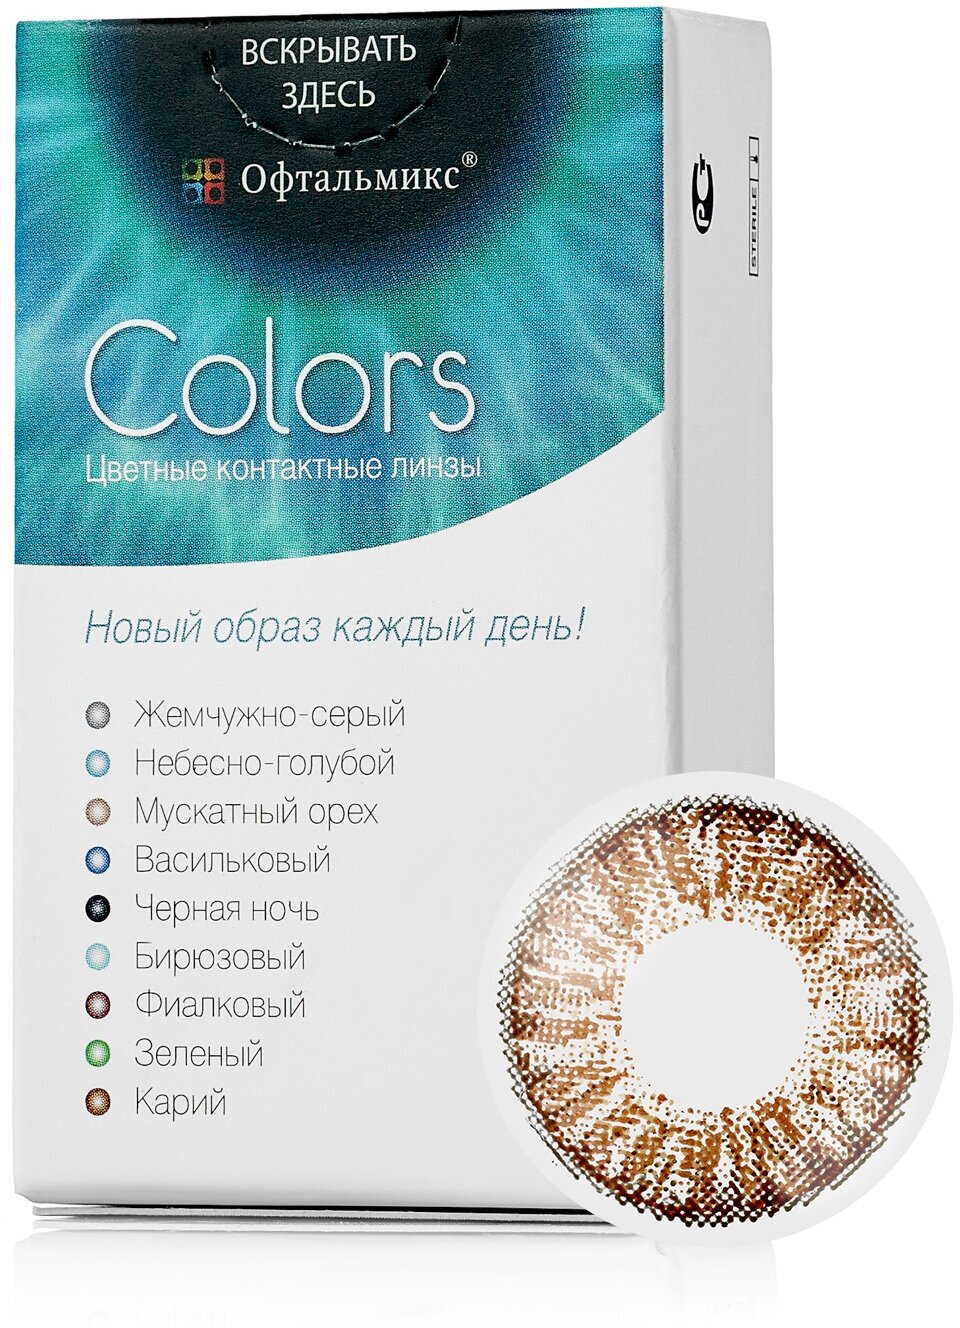 Цветные контактные линзы Офтальмикс Color Brown (карий) R8.6 -3.5D (2шт.)